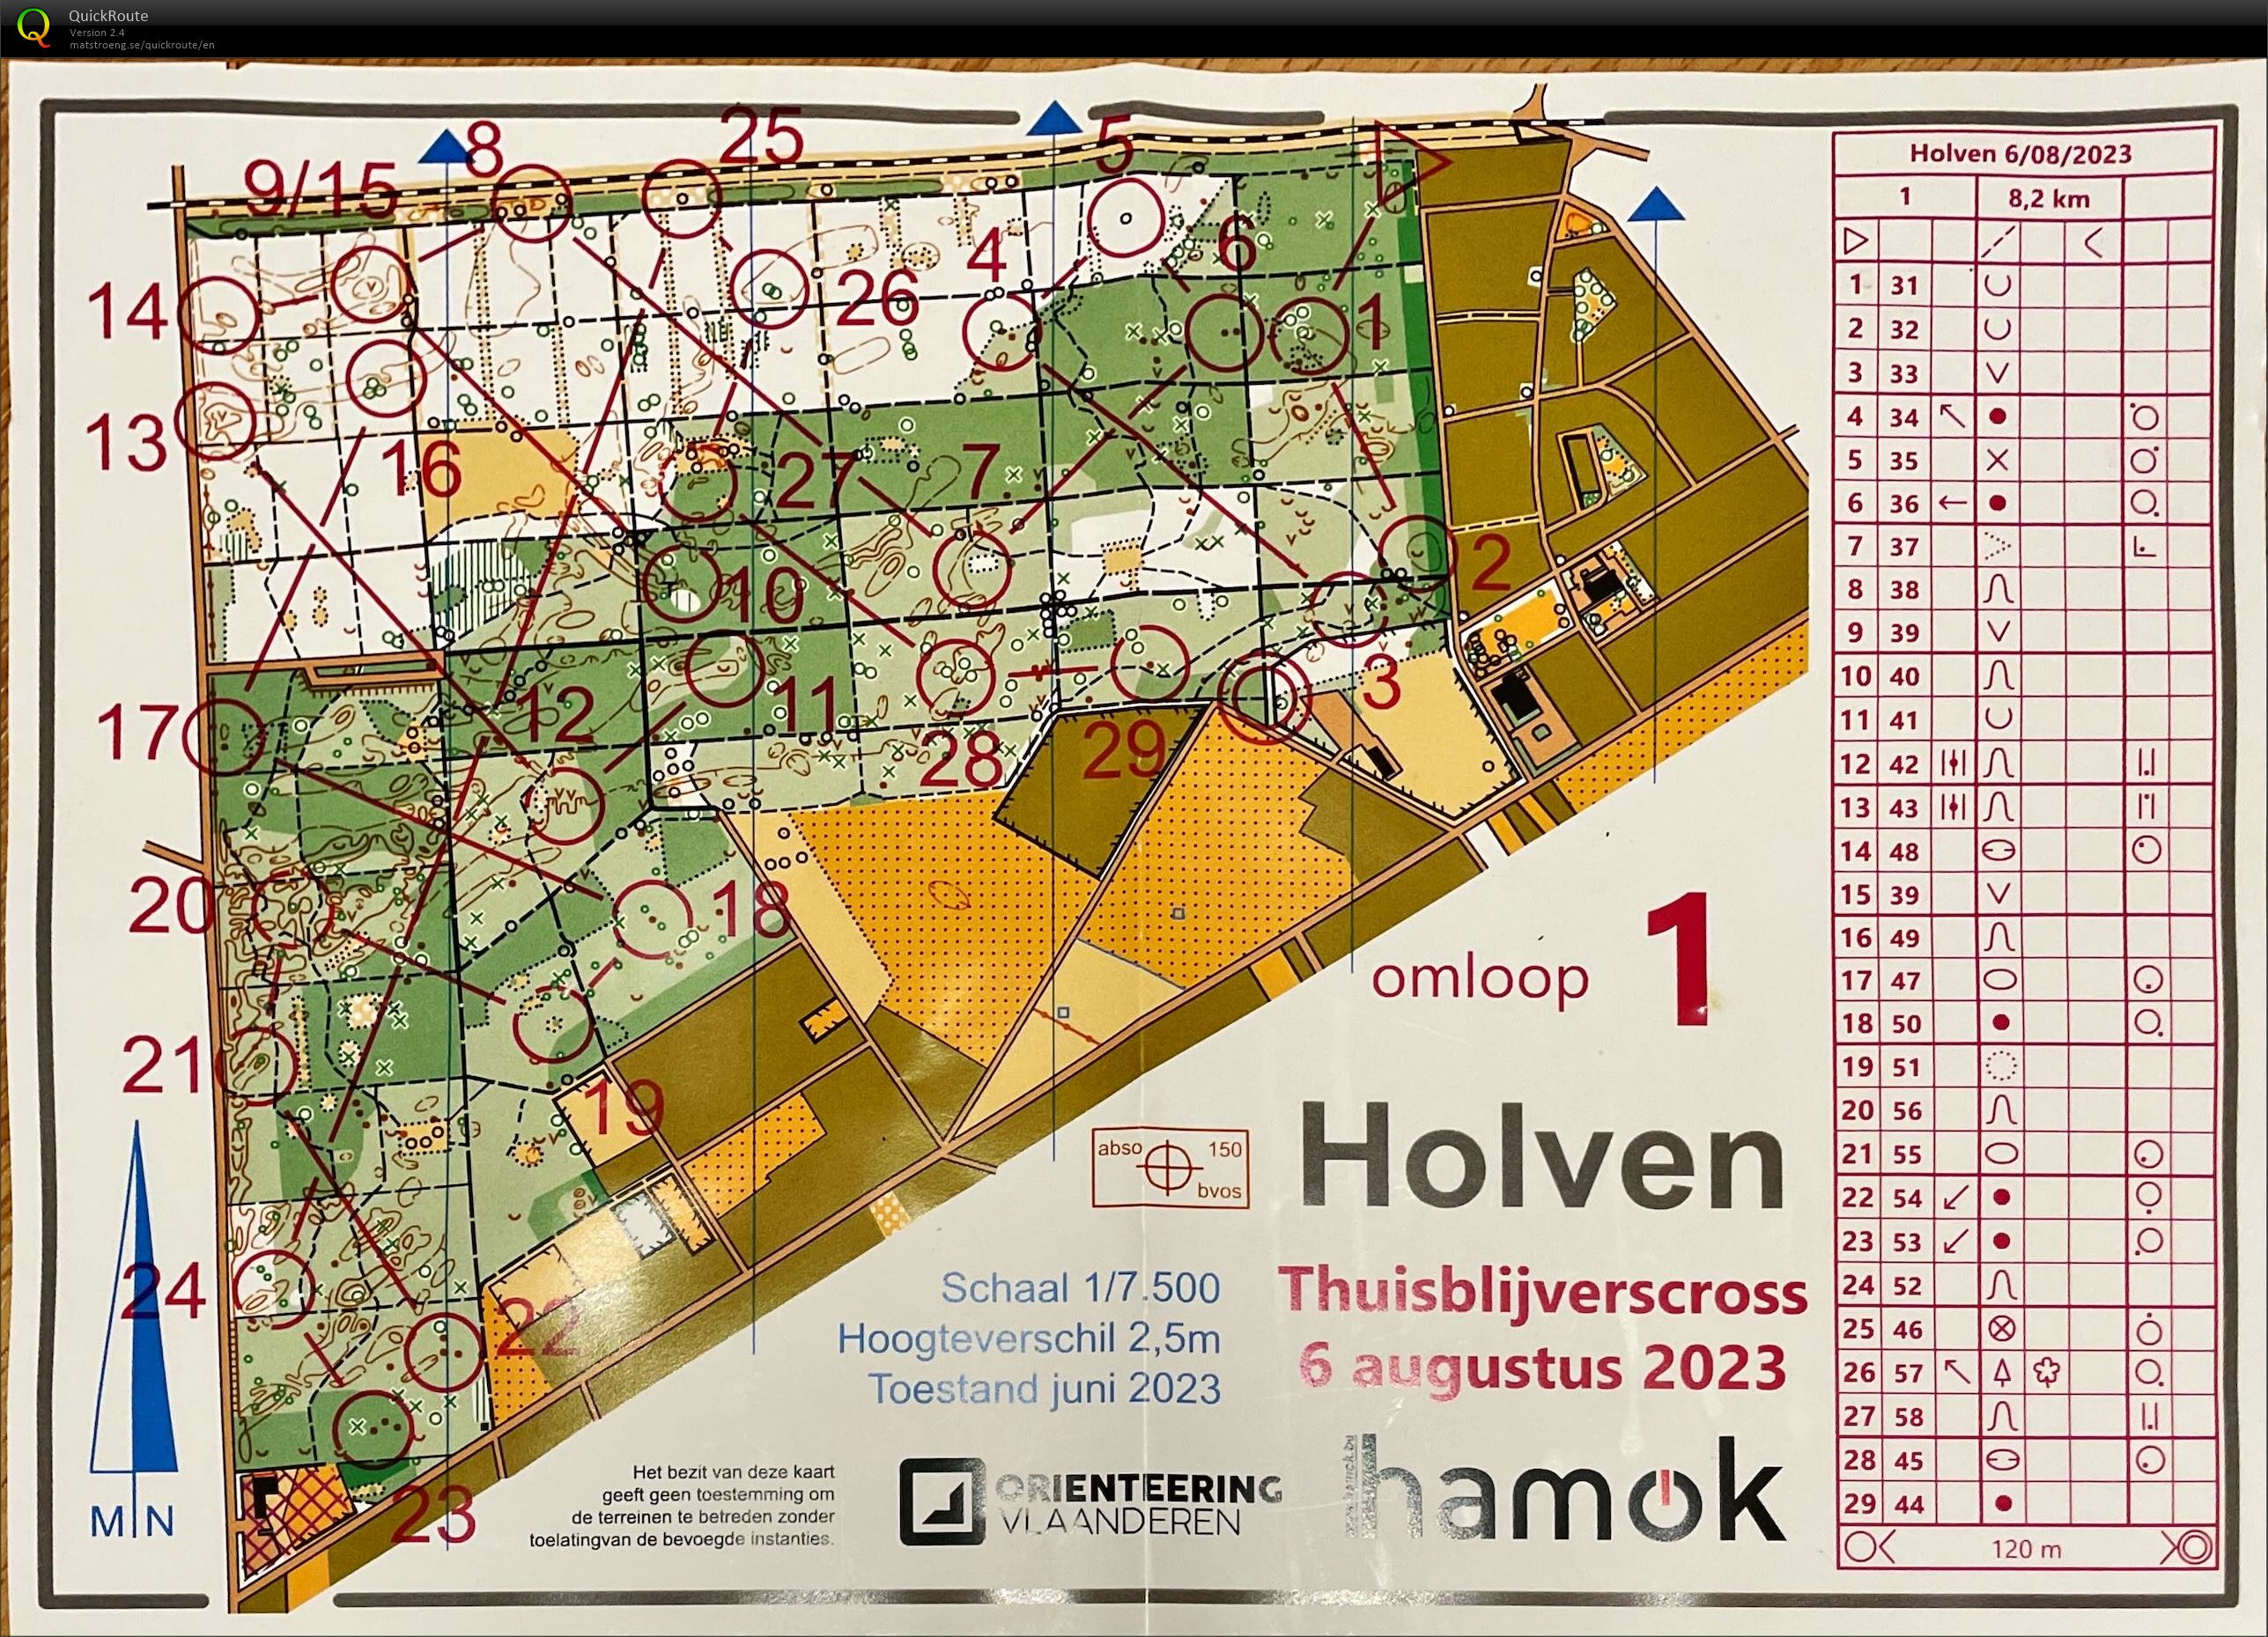 Thuisblijverscross Holven (06-08-2023)